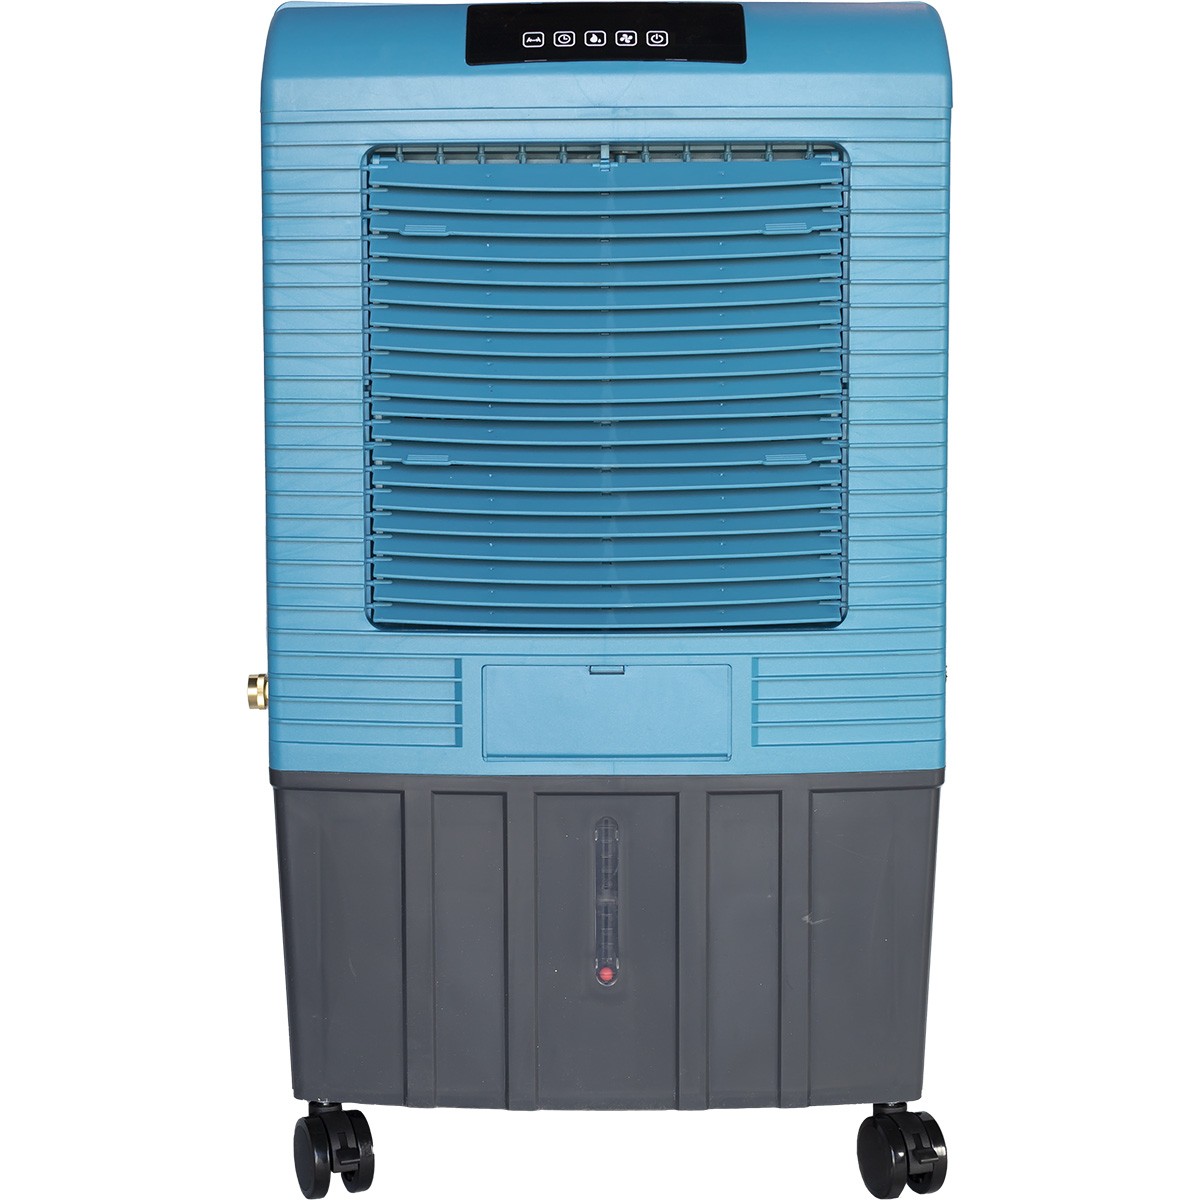 Hessaire MC26T 2,100 CFM Evaporative Cooler - Blue